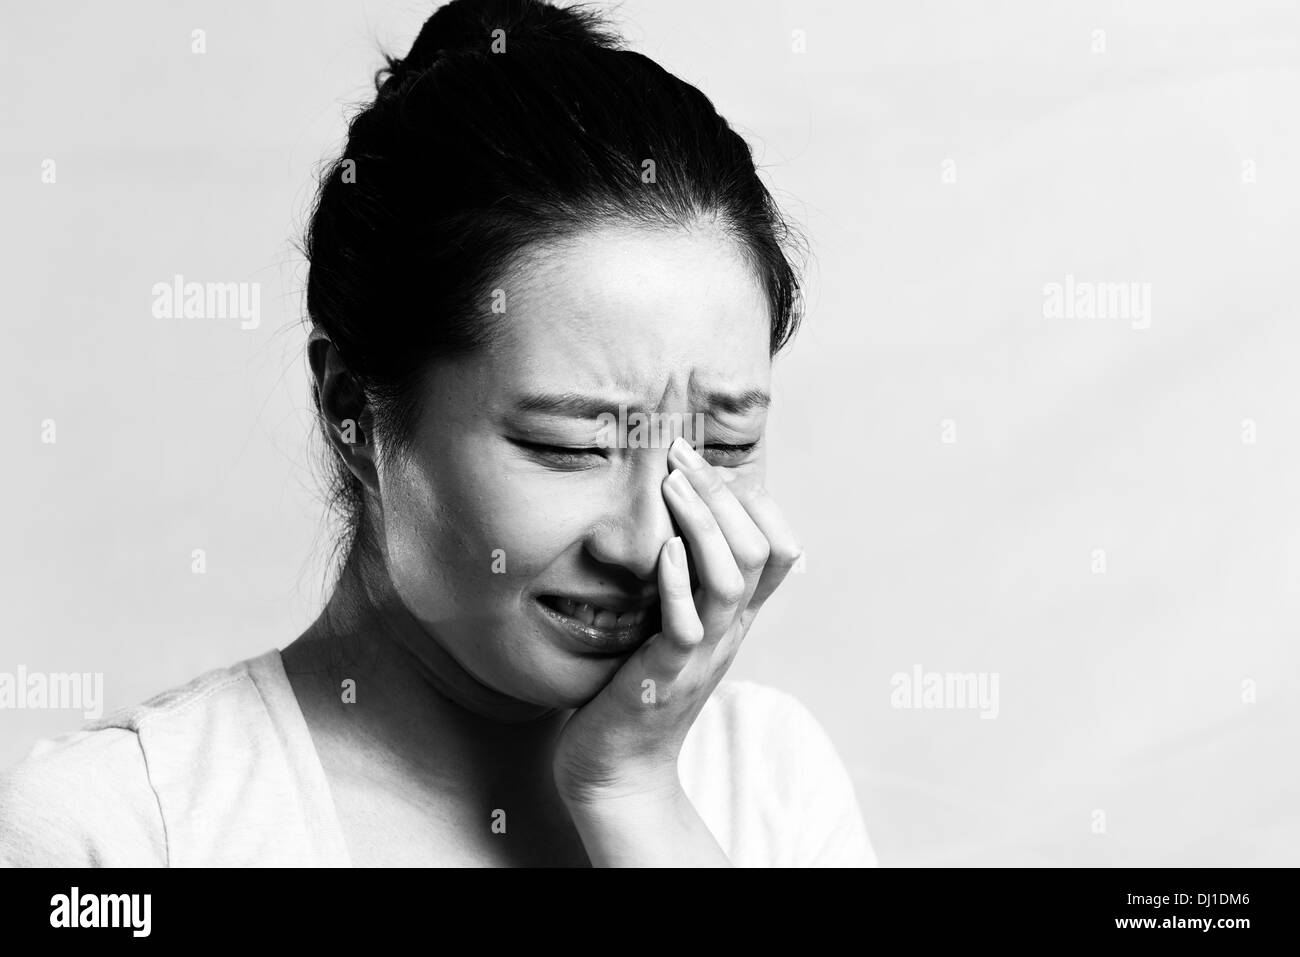 Porträt von hübschen Mädchen weint verzweifelt, schwarz / weiß Stil Stockfoto